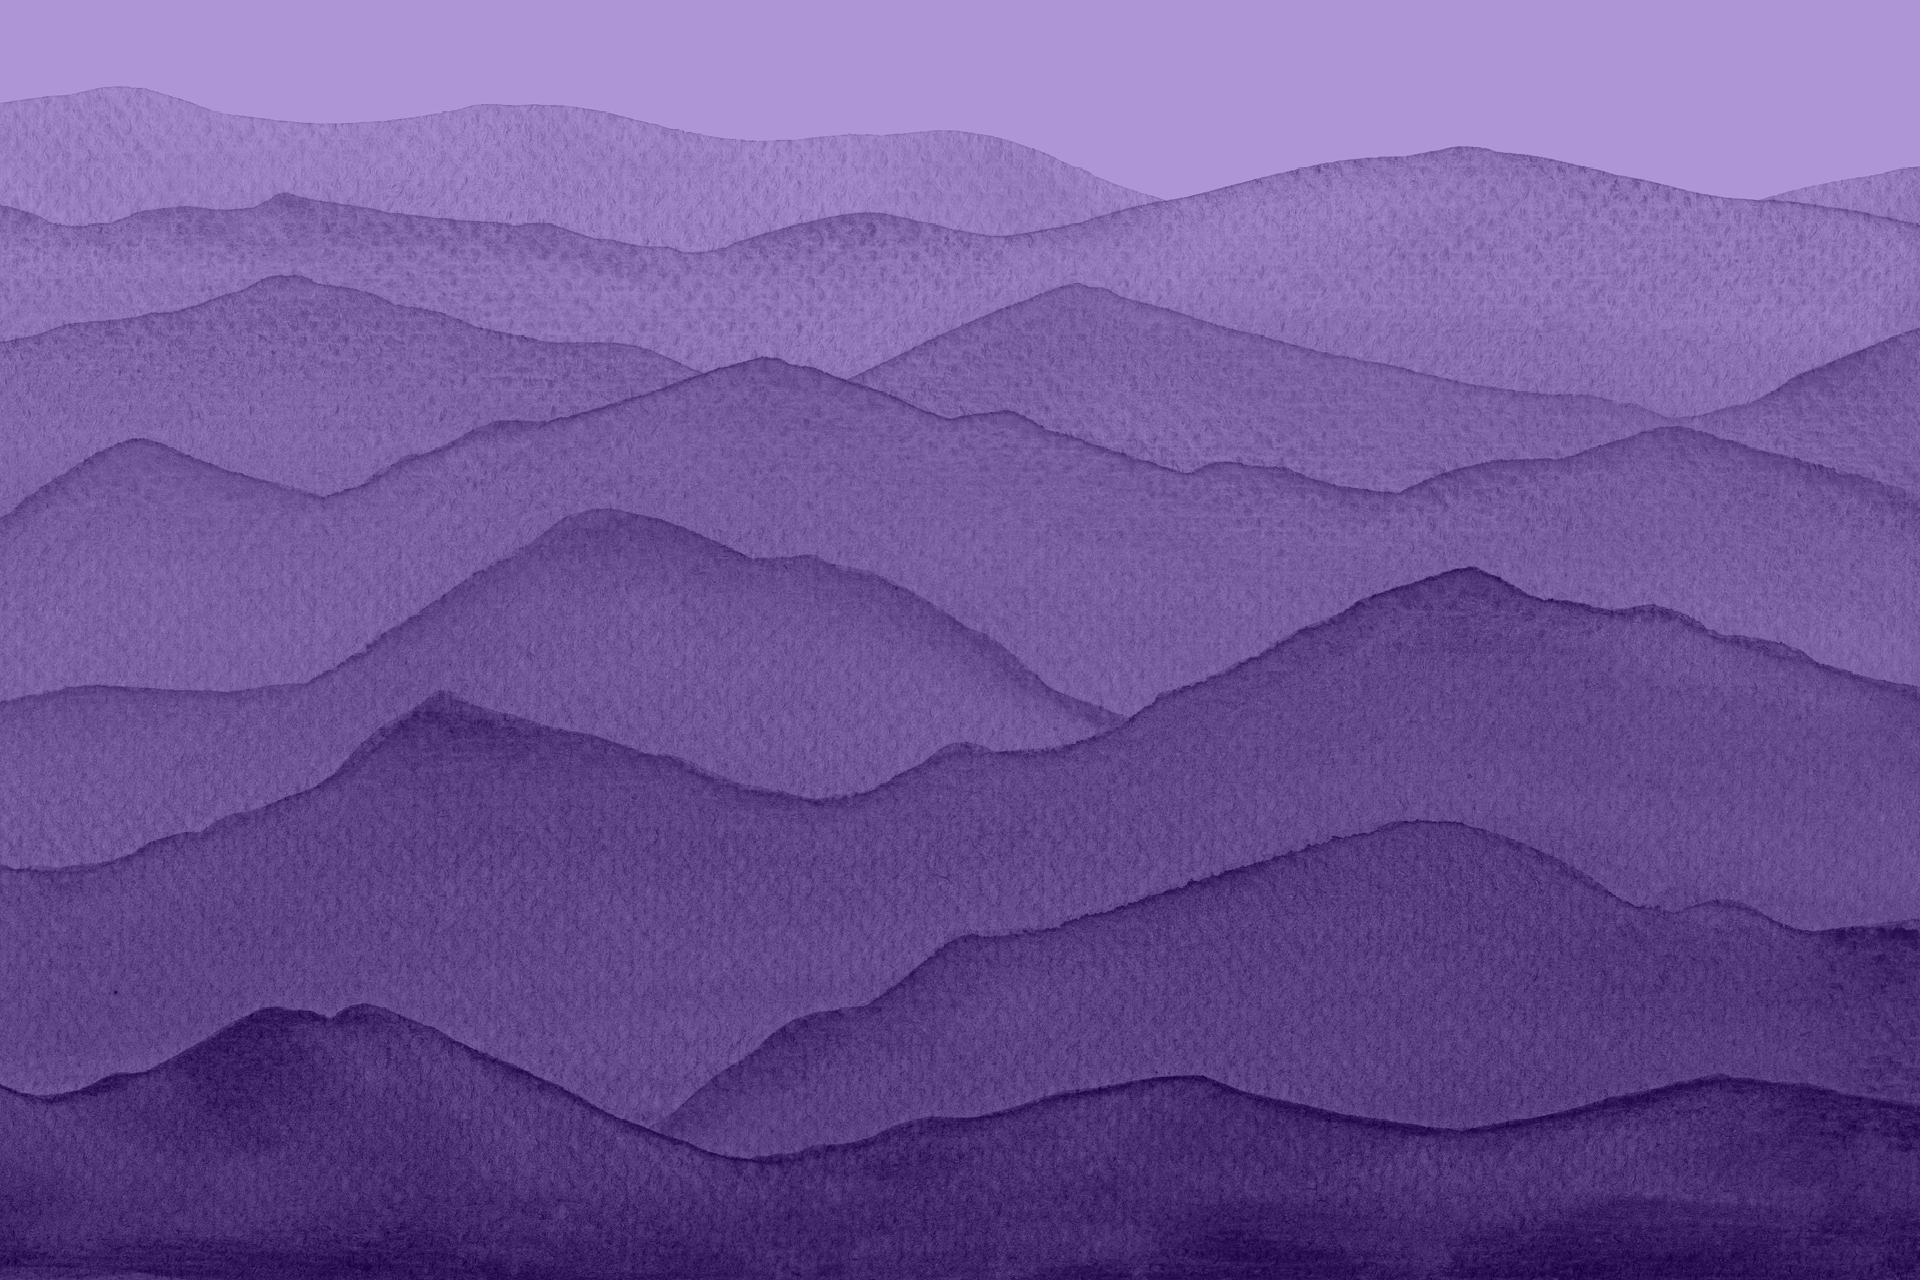 Watercolor painting of a mountainous purple landscape